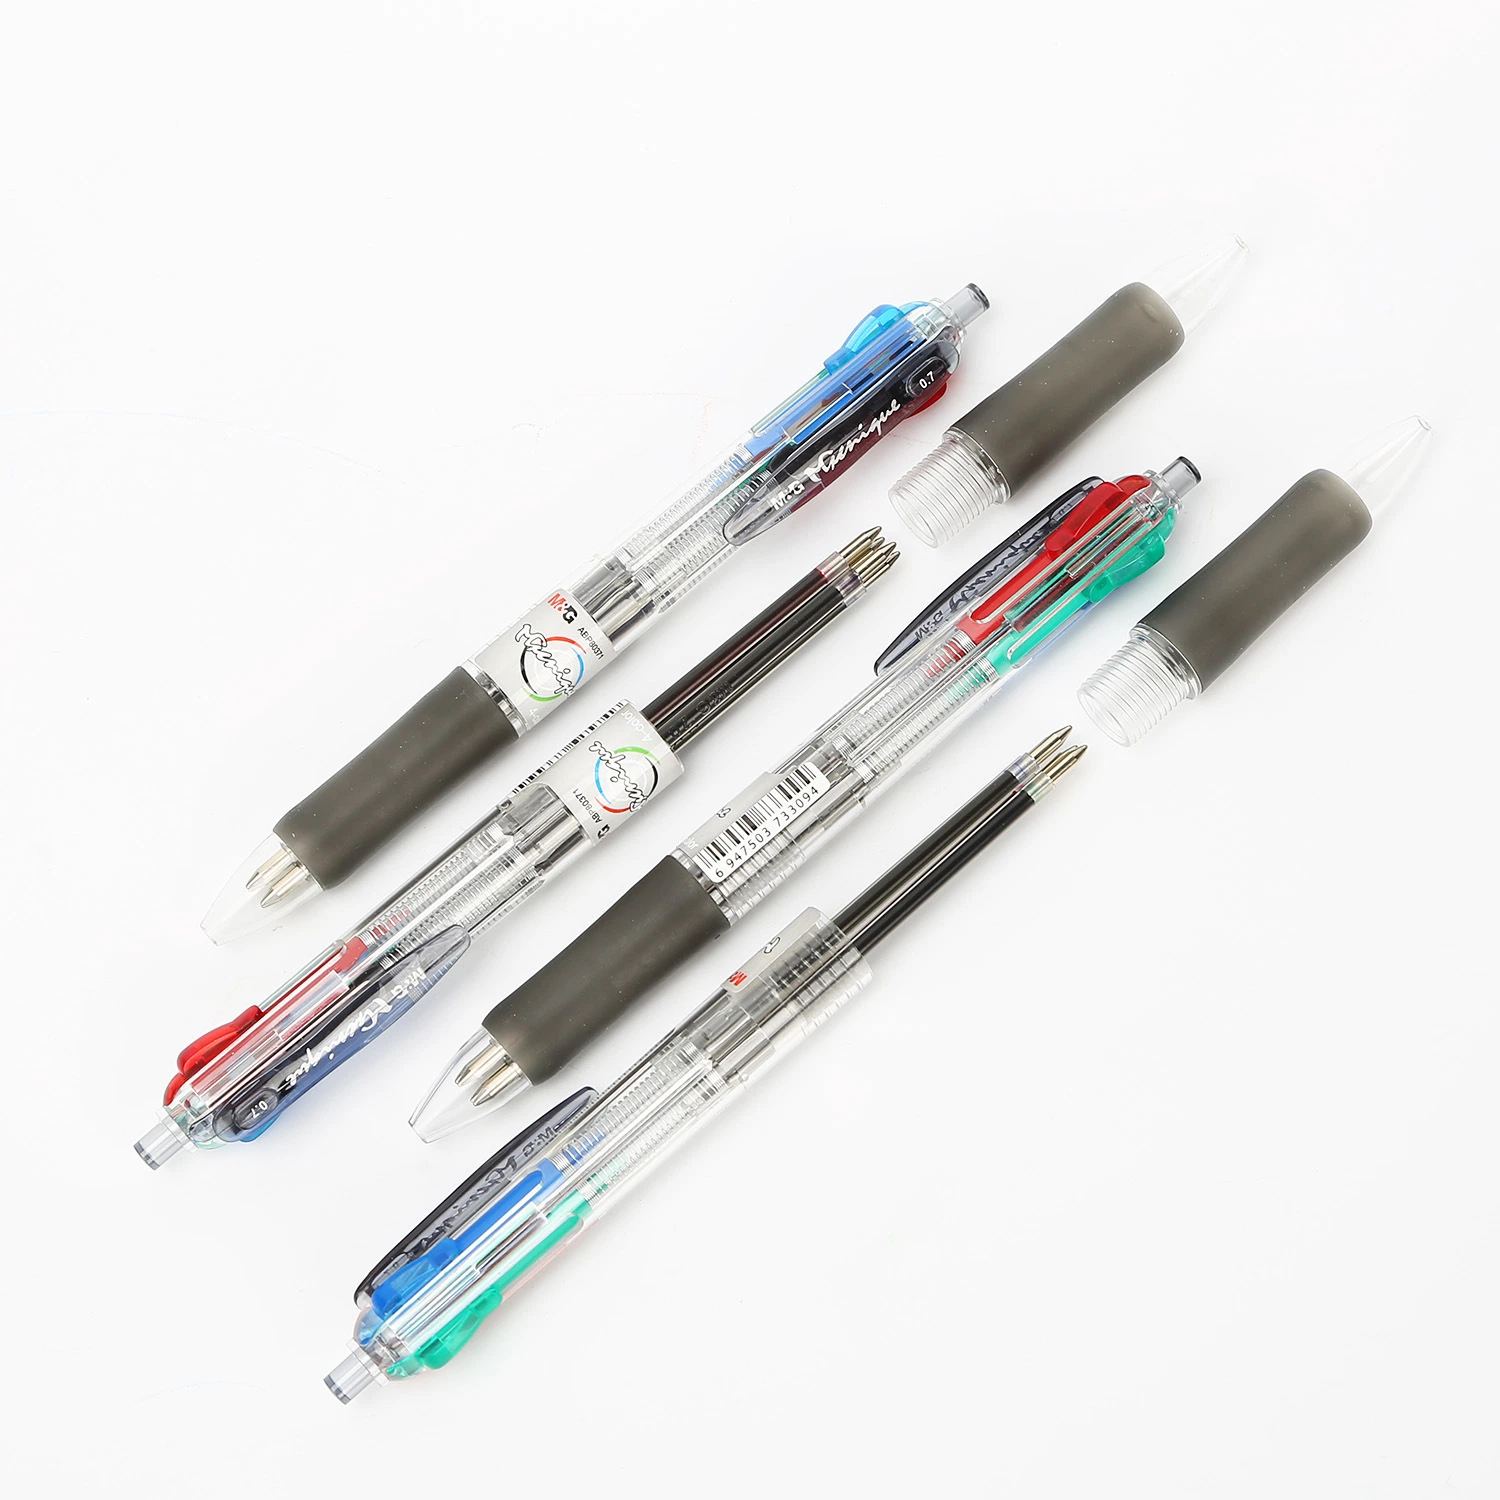 Escritório moderno fornece 4 em 1 Multi Colorido Plastic Caneta esferográfica de caneta